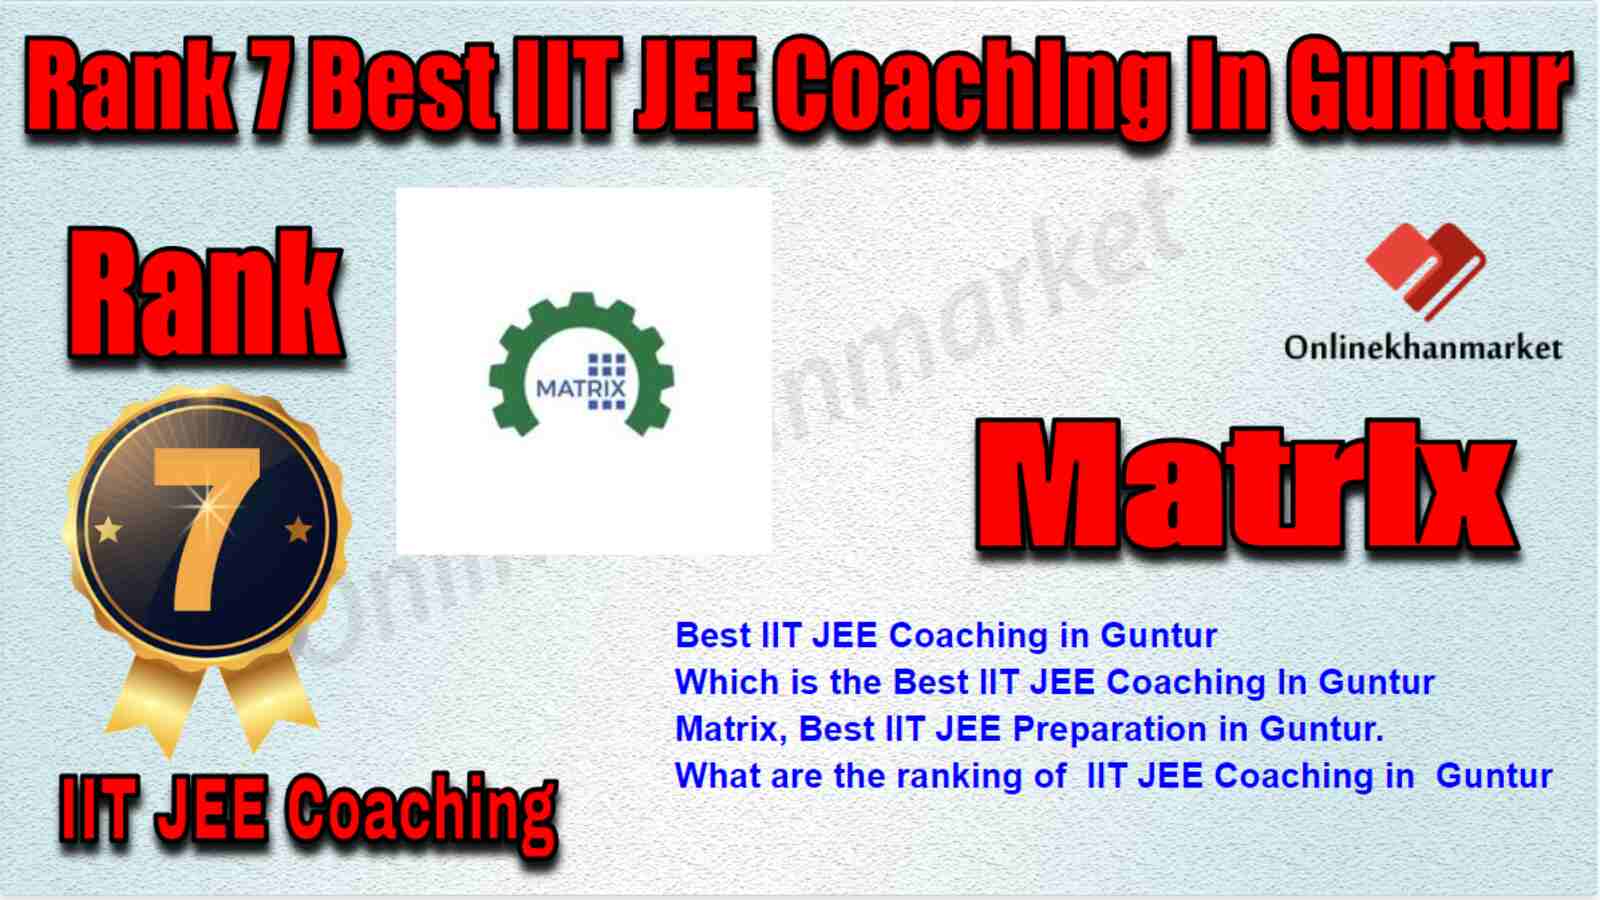 Rank 7 Best IIT JEE Coaching in Guntur